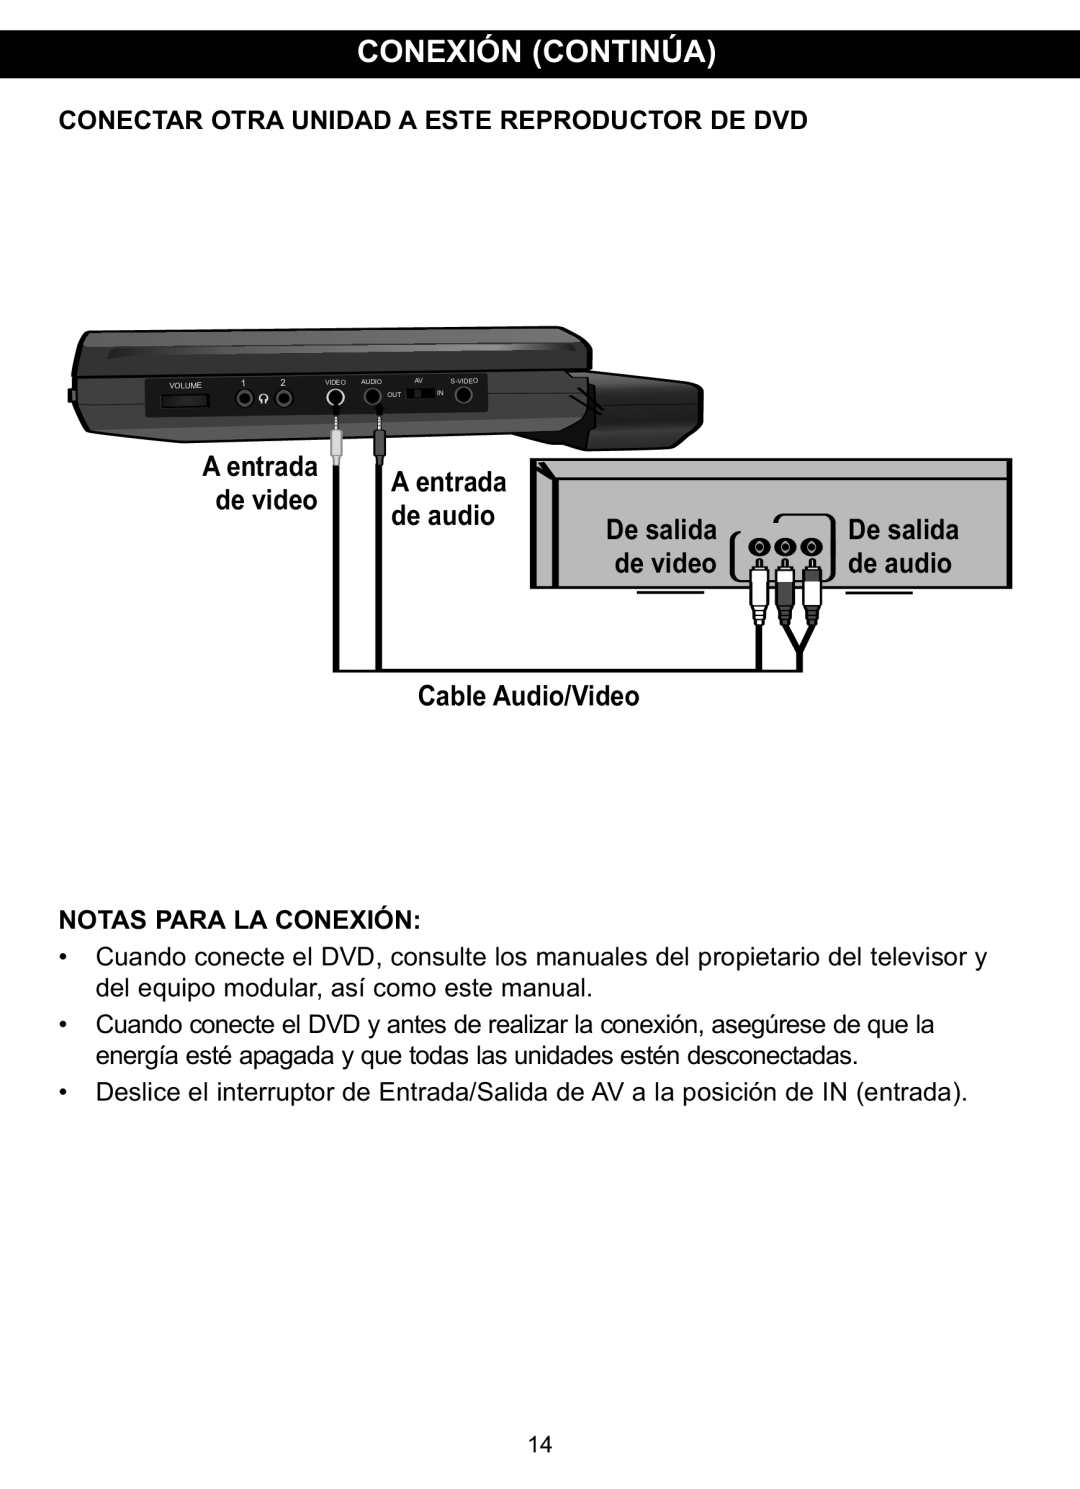 Memorex MVDP1088 manual Conexión Continúa, Conectar Otra Unidad A Este Reproductor De Dvd, de video, de audio 